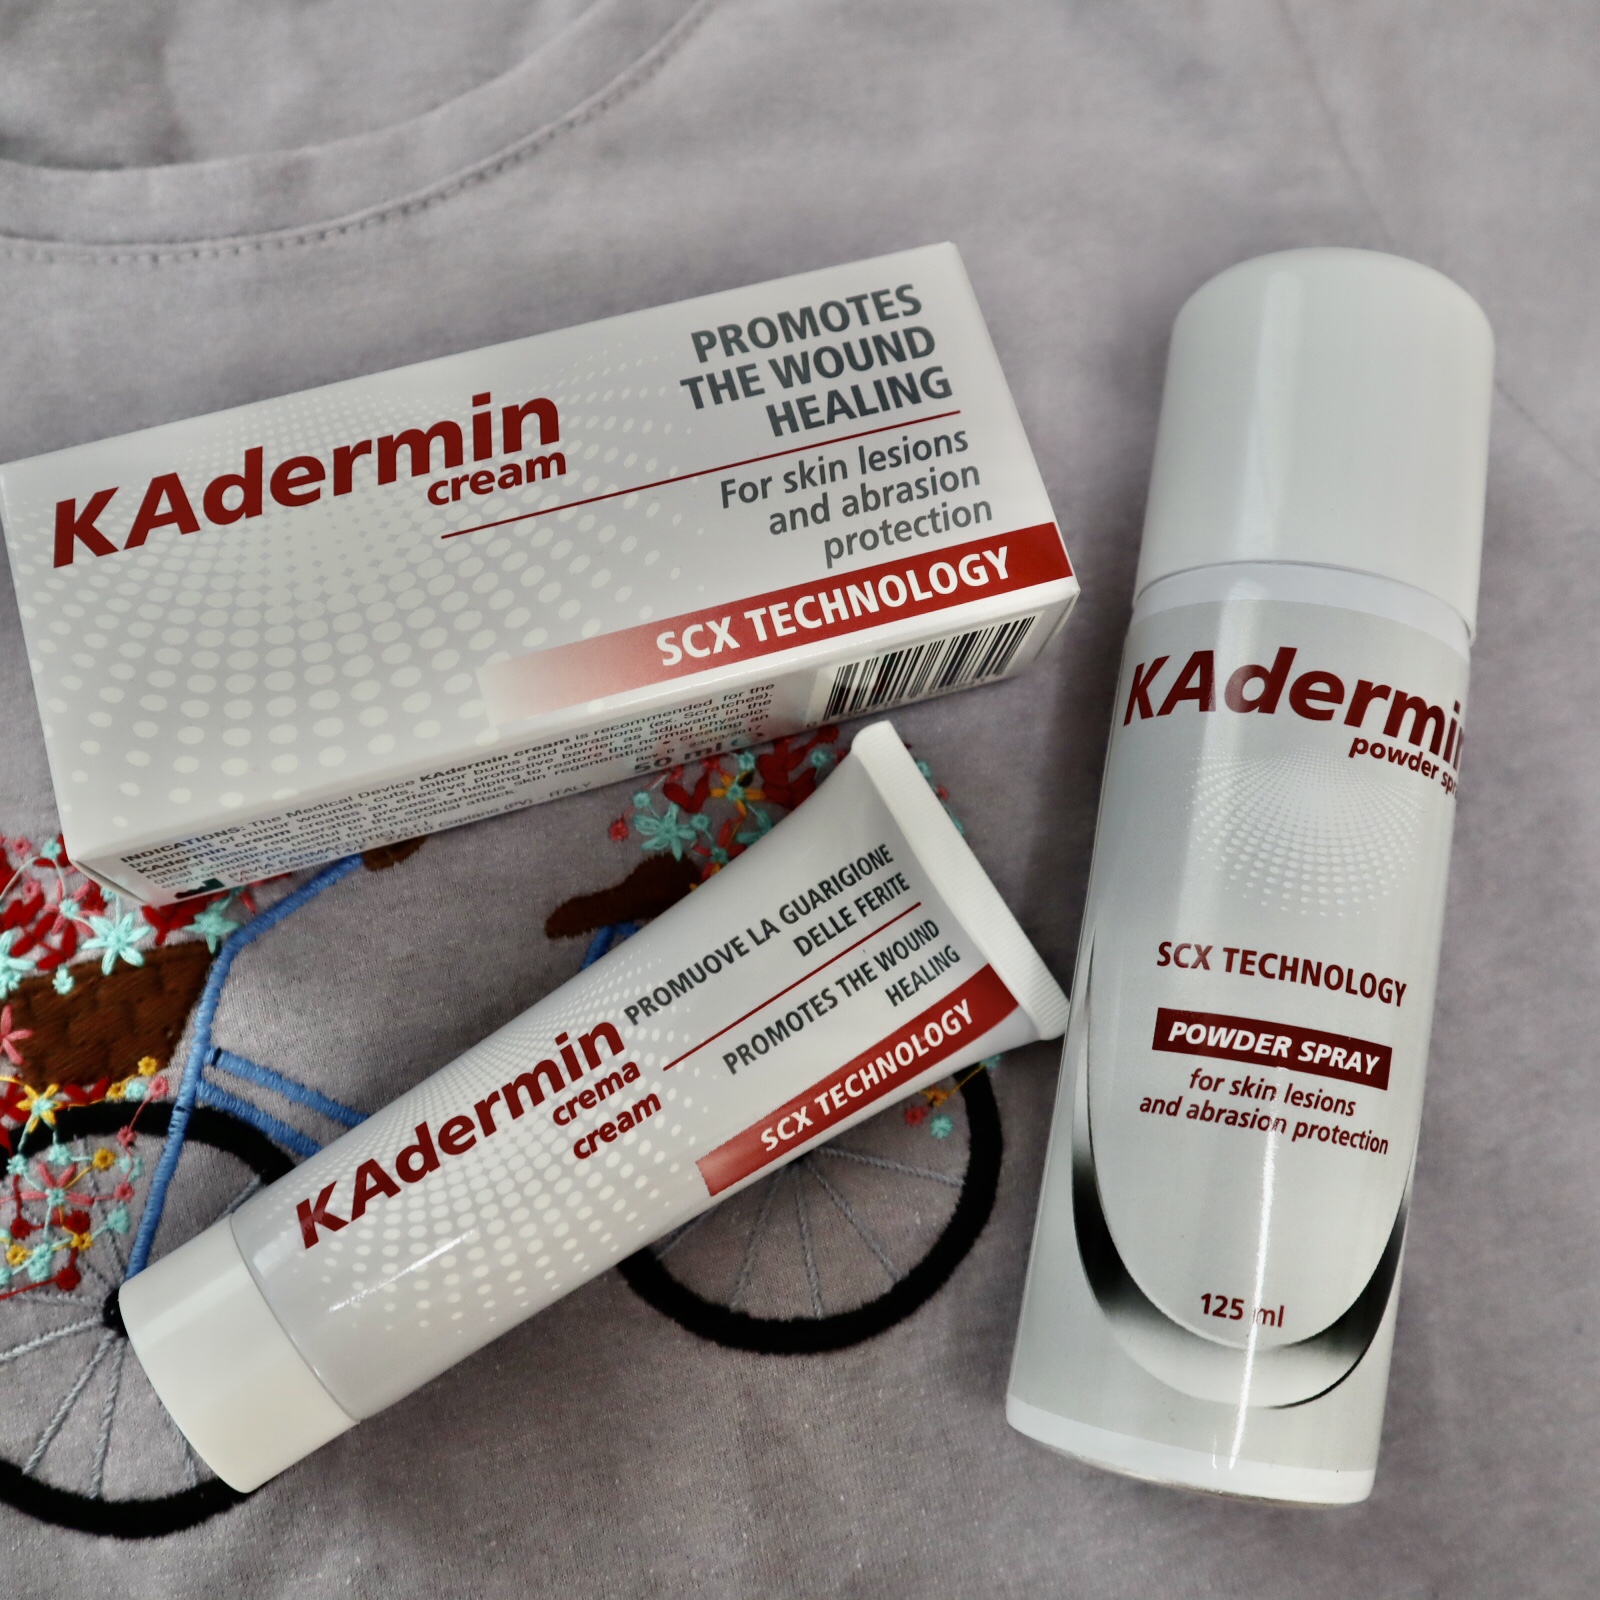 Kit de prim ajutor într-un singur produs inovator: KAdermin